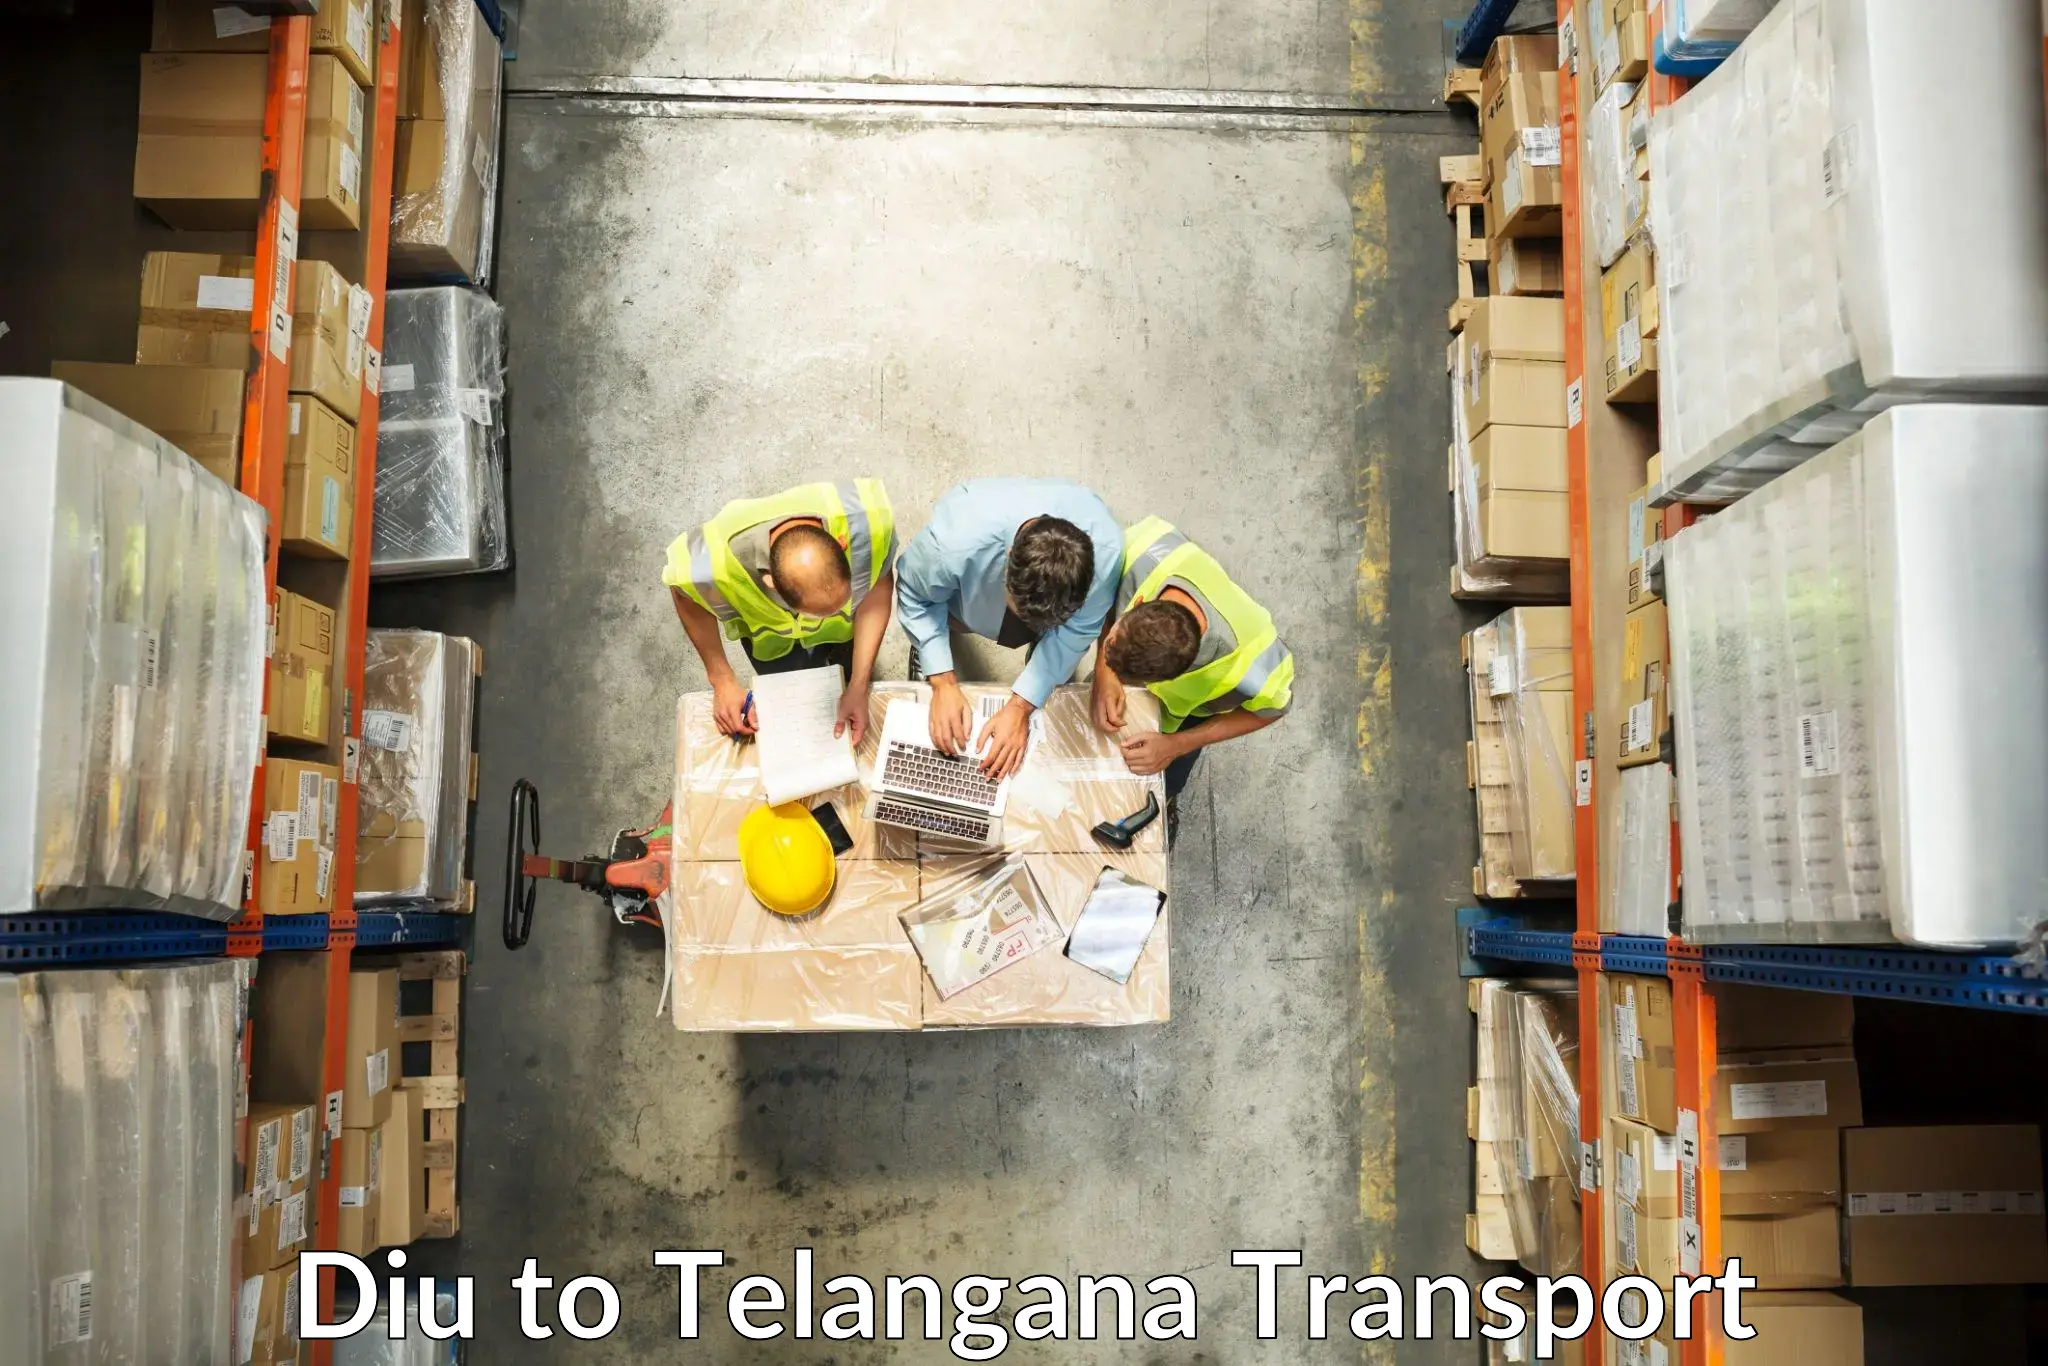 Truck transport companies in India Diu to Telangana